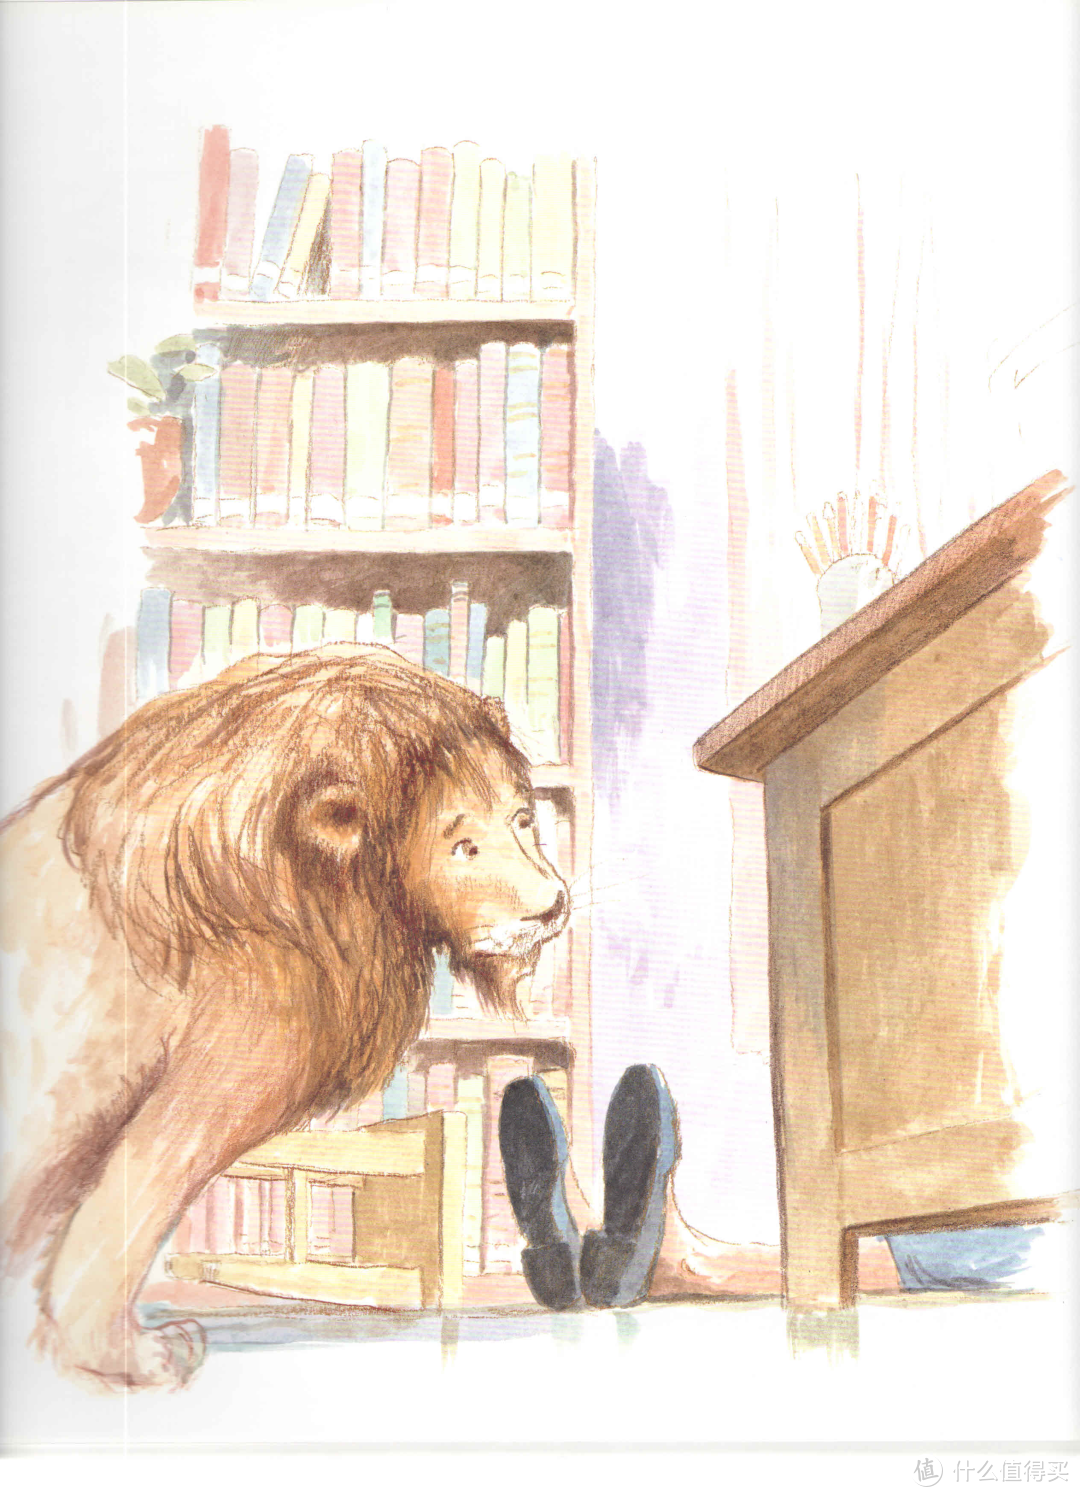 宝宝绘本 | 图书馆狮子